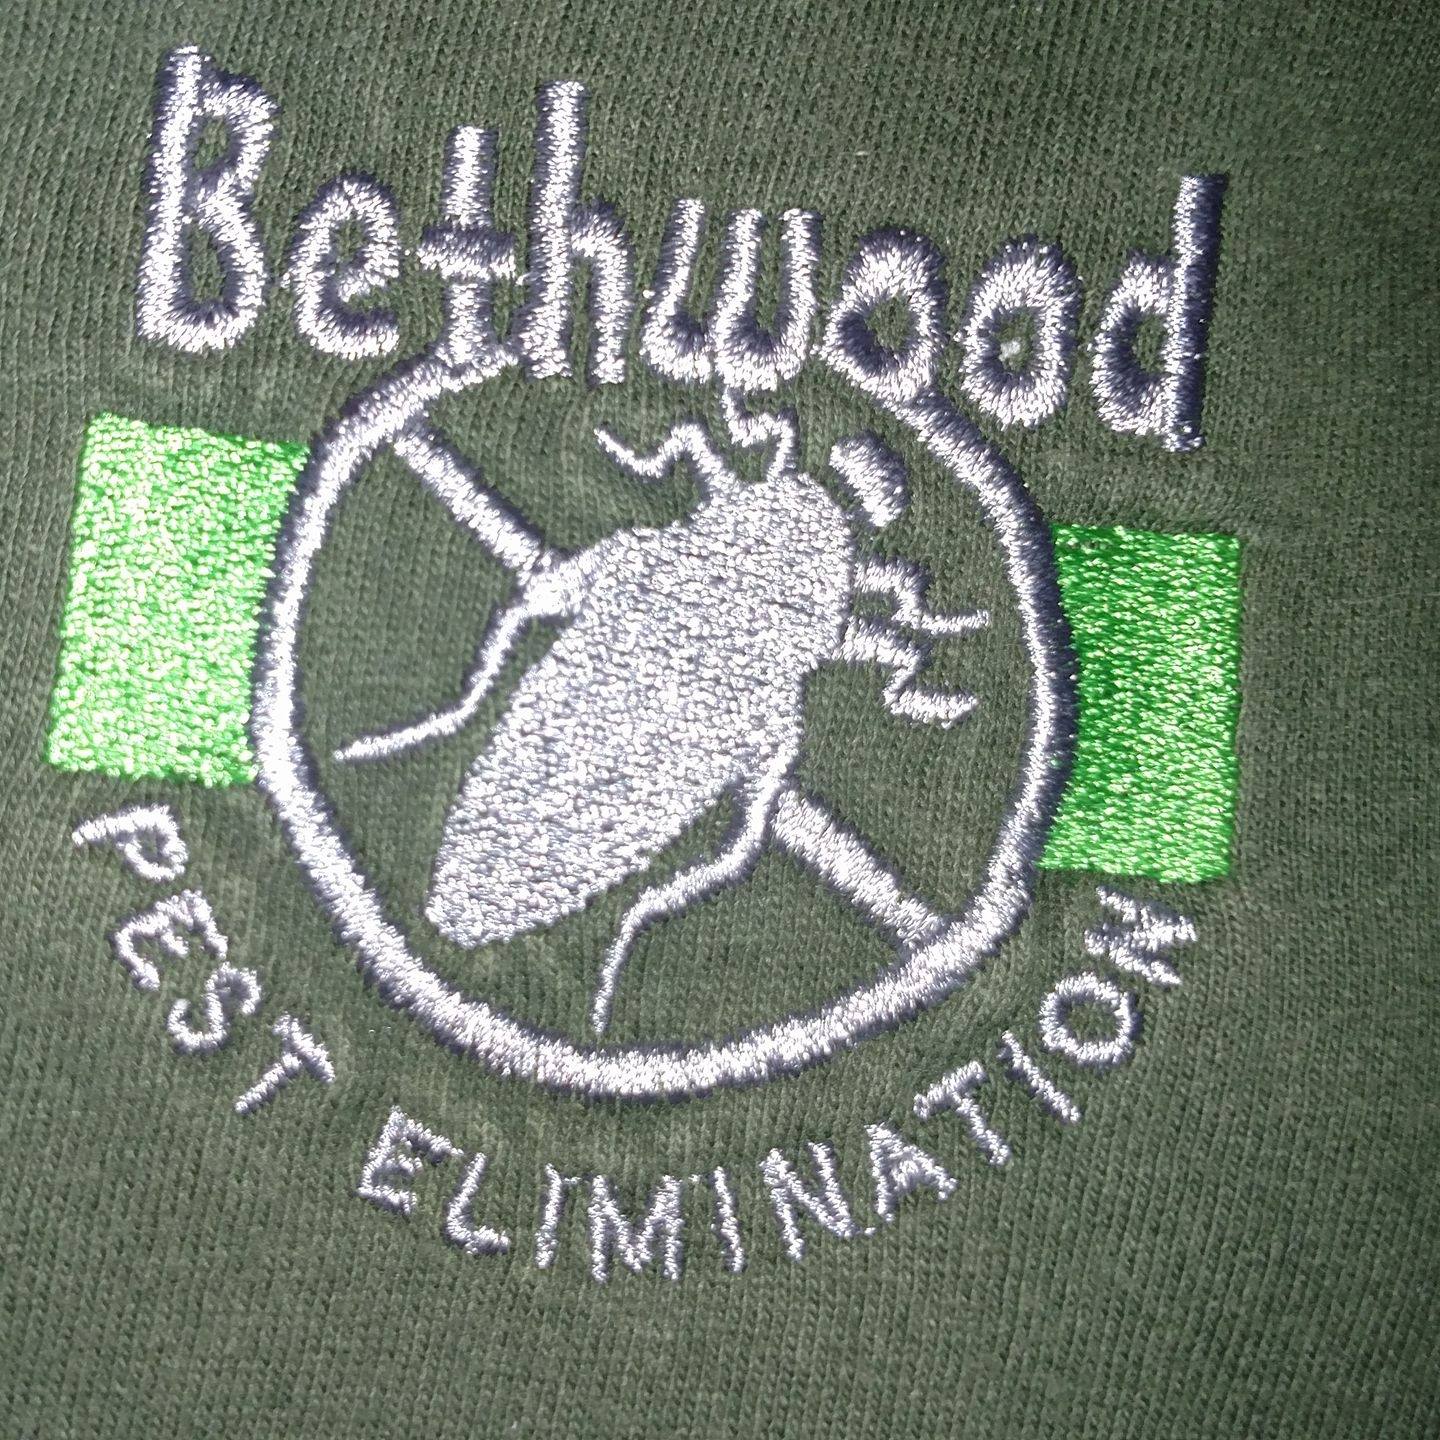 Bethwood Pest Elimination 125 Humiston Dr, Bethany Connecticut 06524